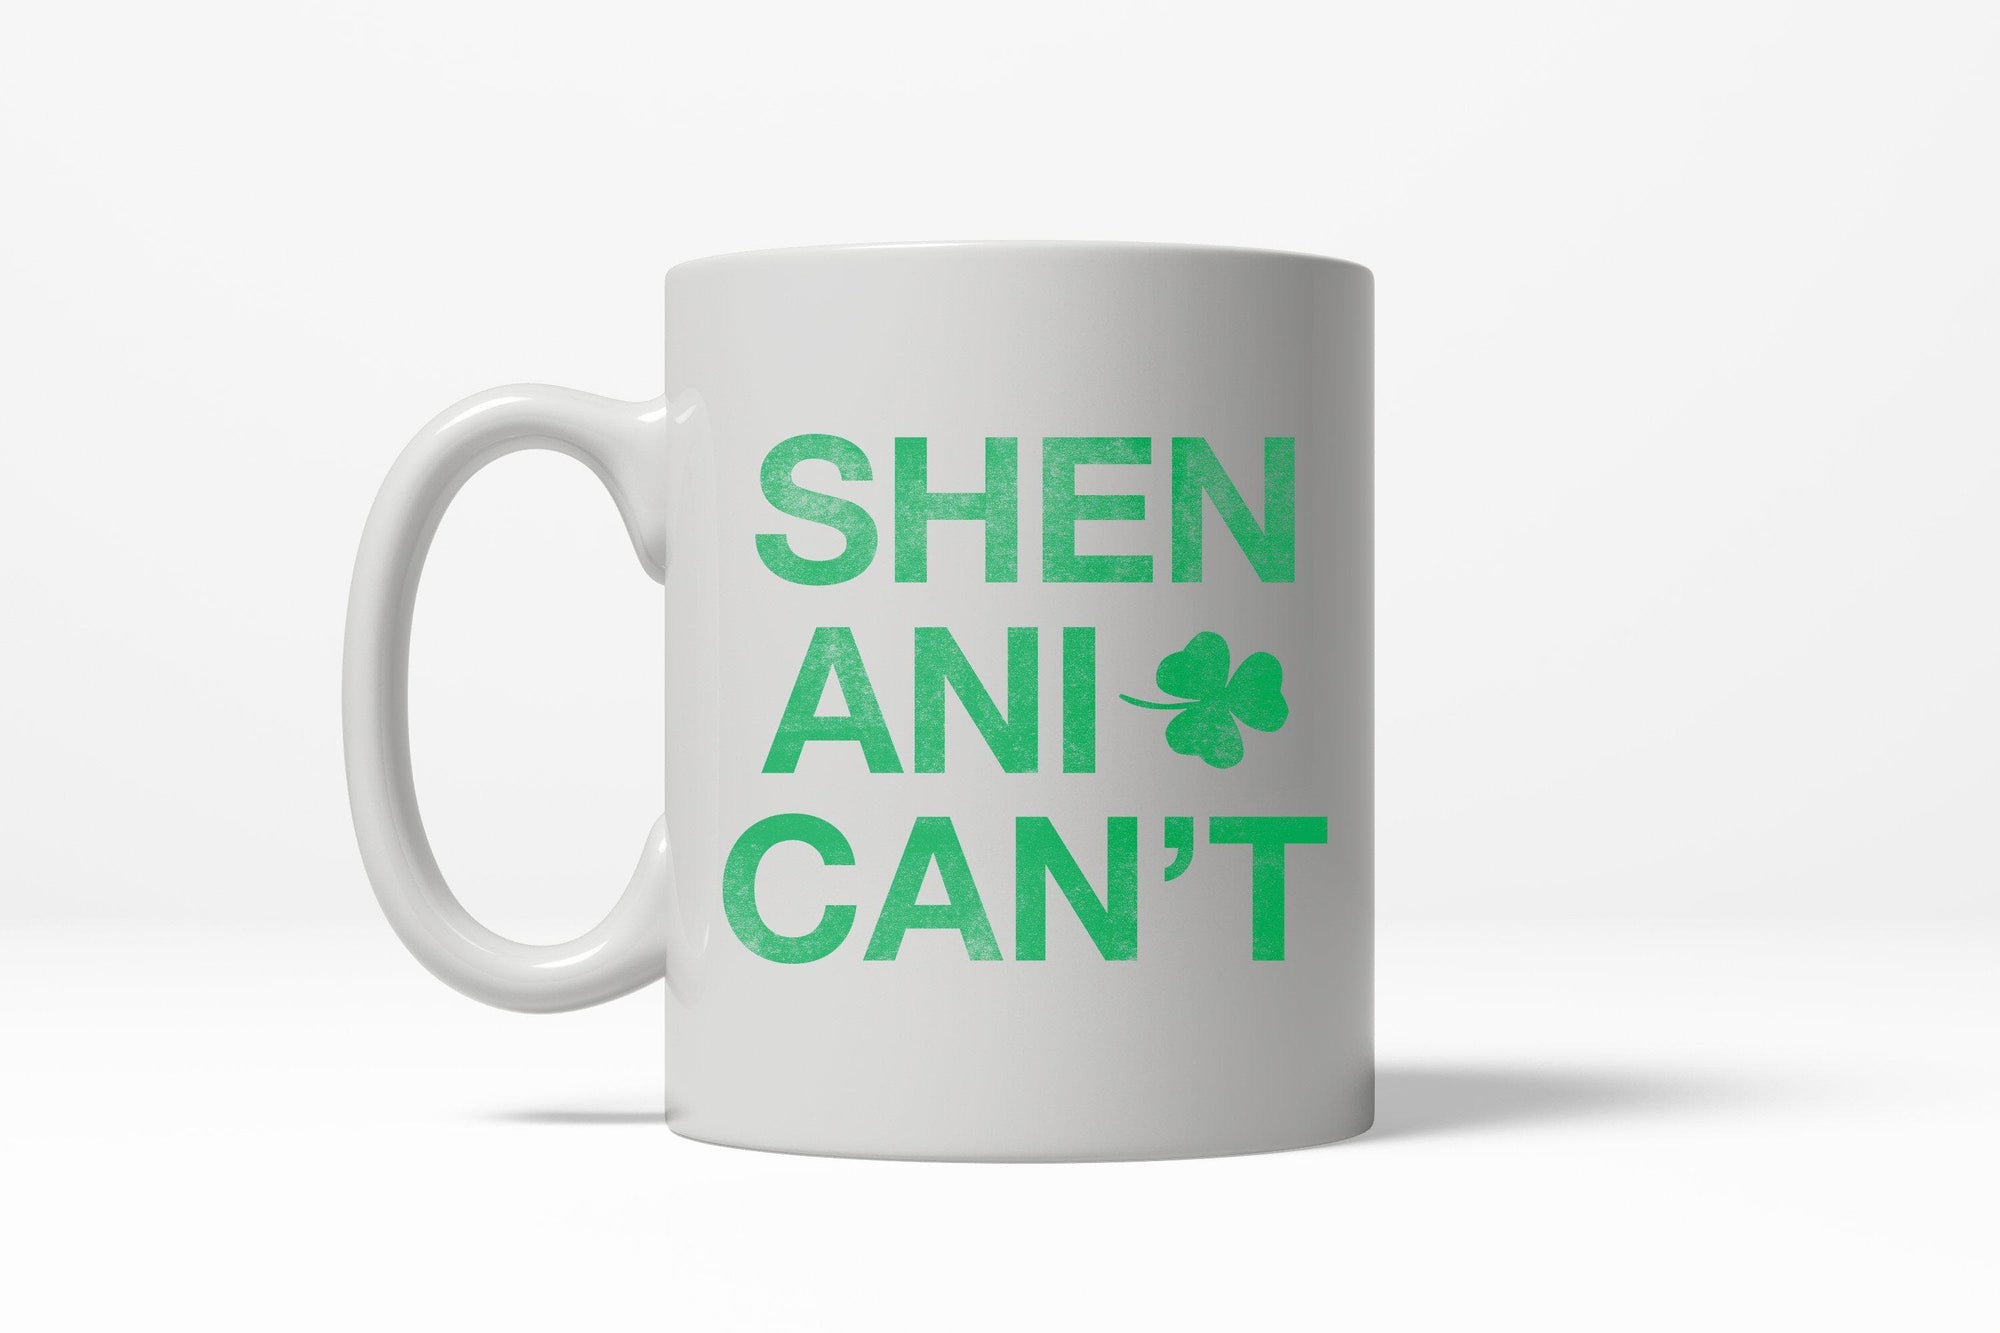 Shenani-Cant Mug - Crazy Dog T-Shirts